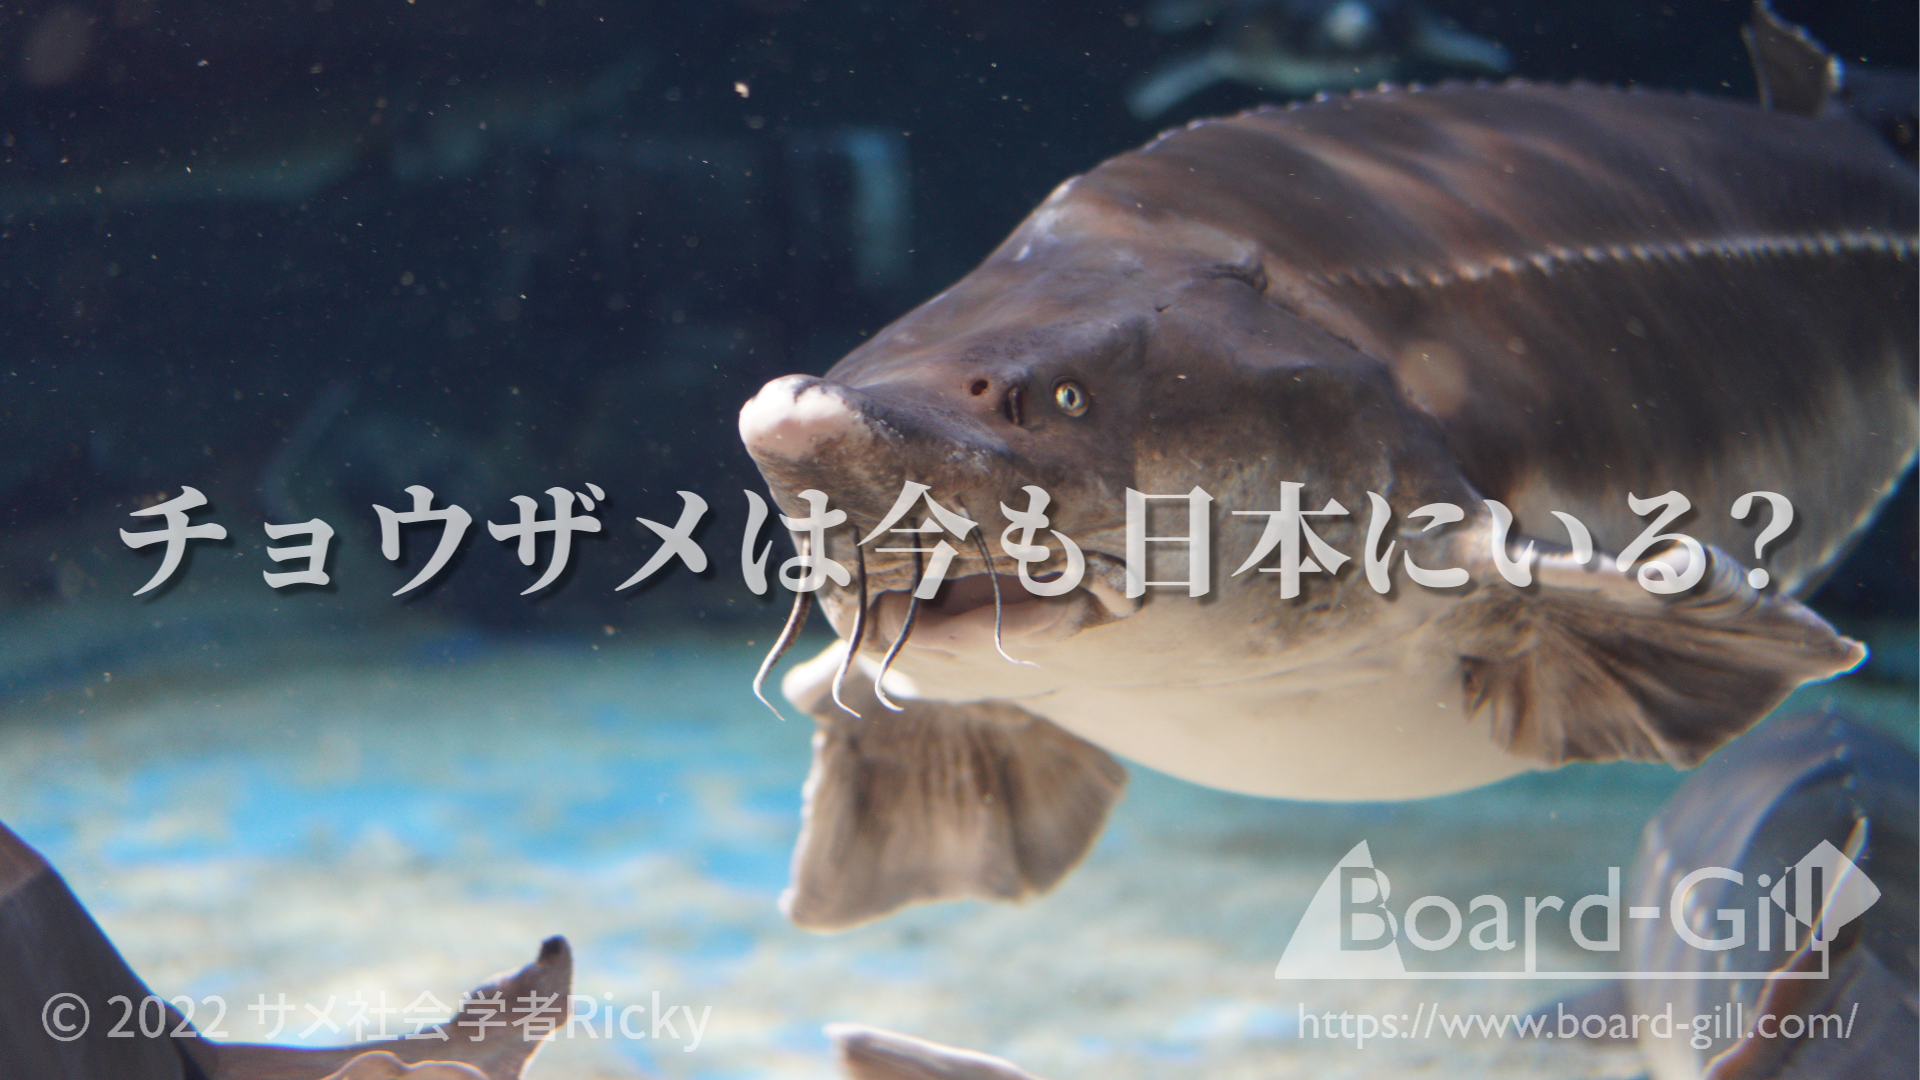 チョウザメが今も日本にいるかどうかについて解説した記事サムネイル